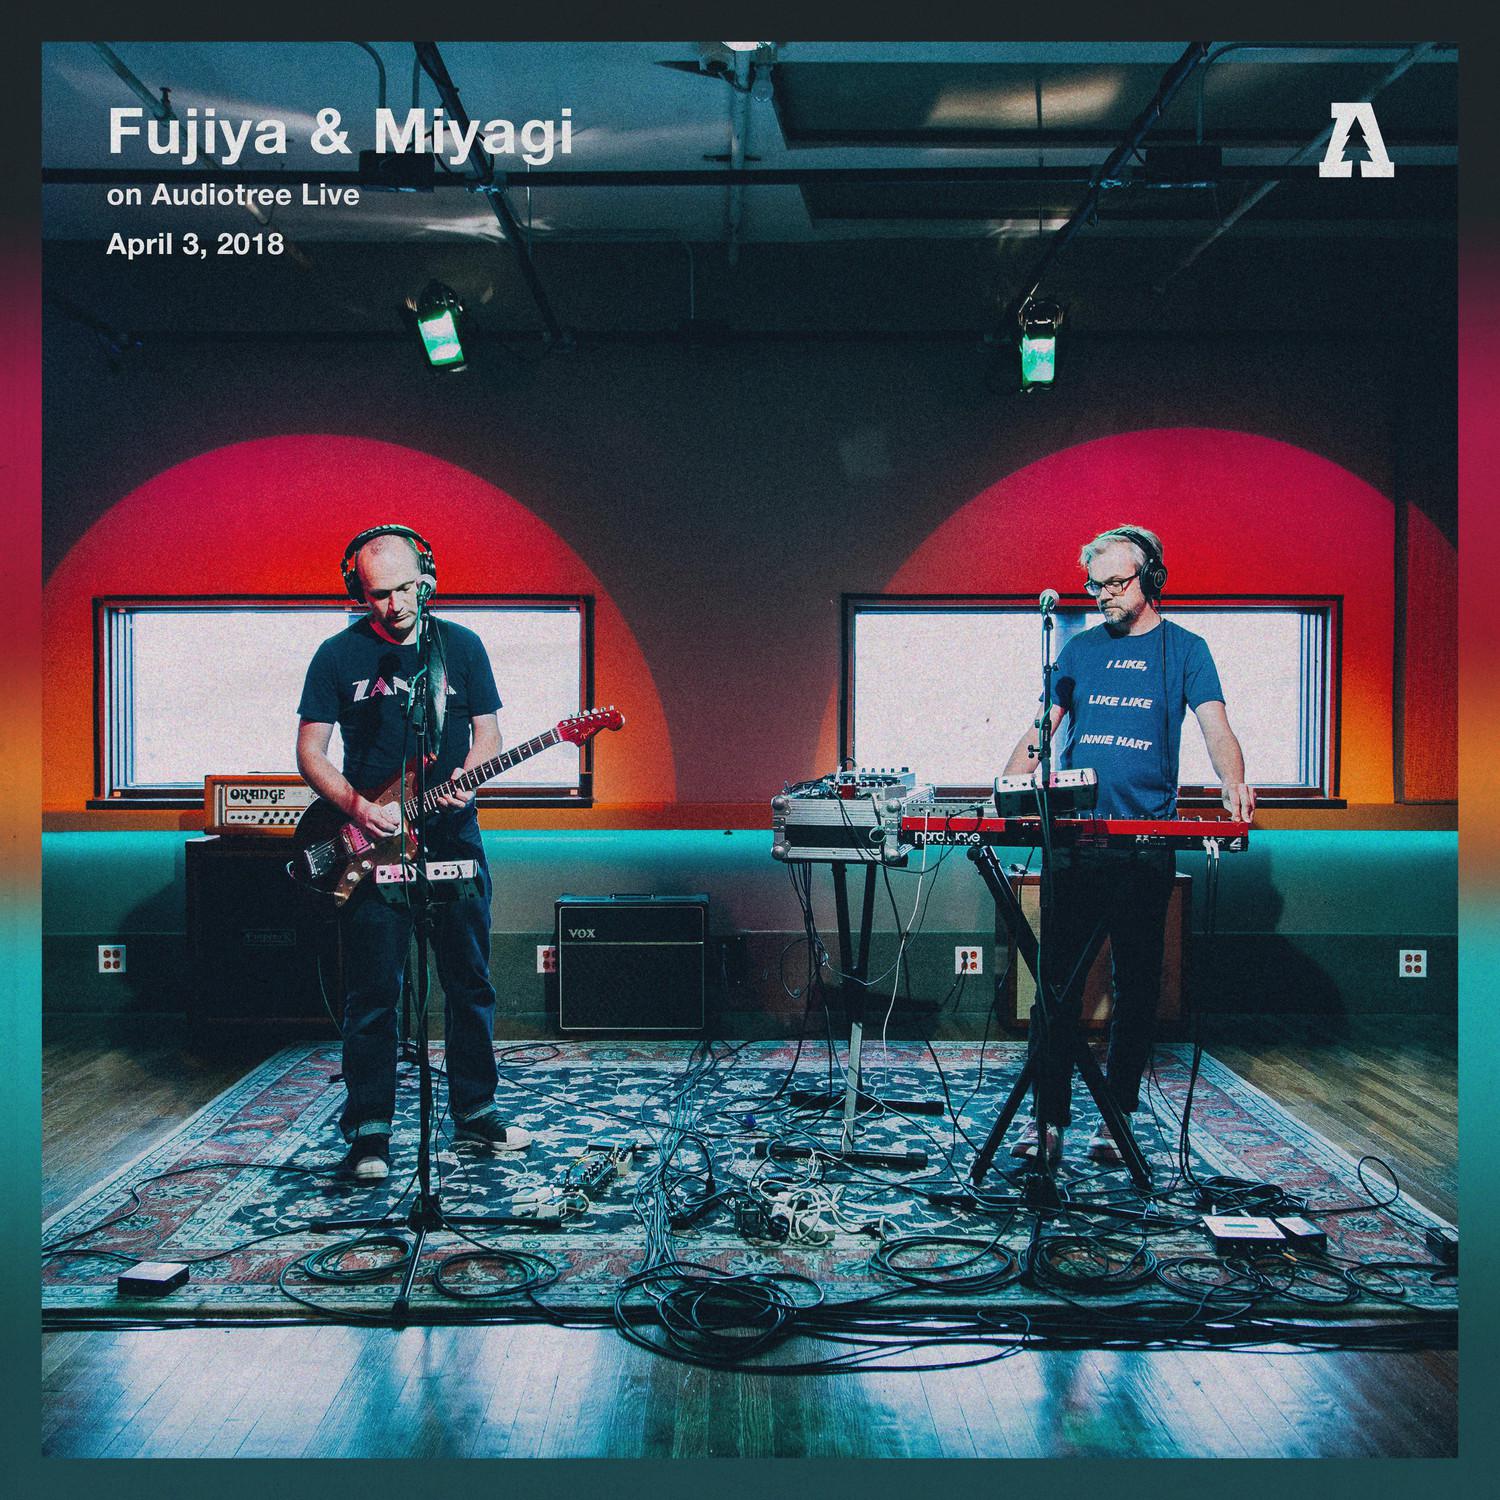 Fujiya & Miyagi - Serotonin Rushes (Audiotree Live Version)